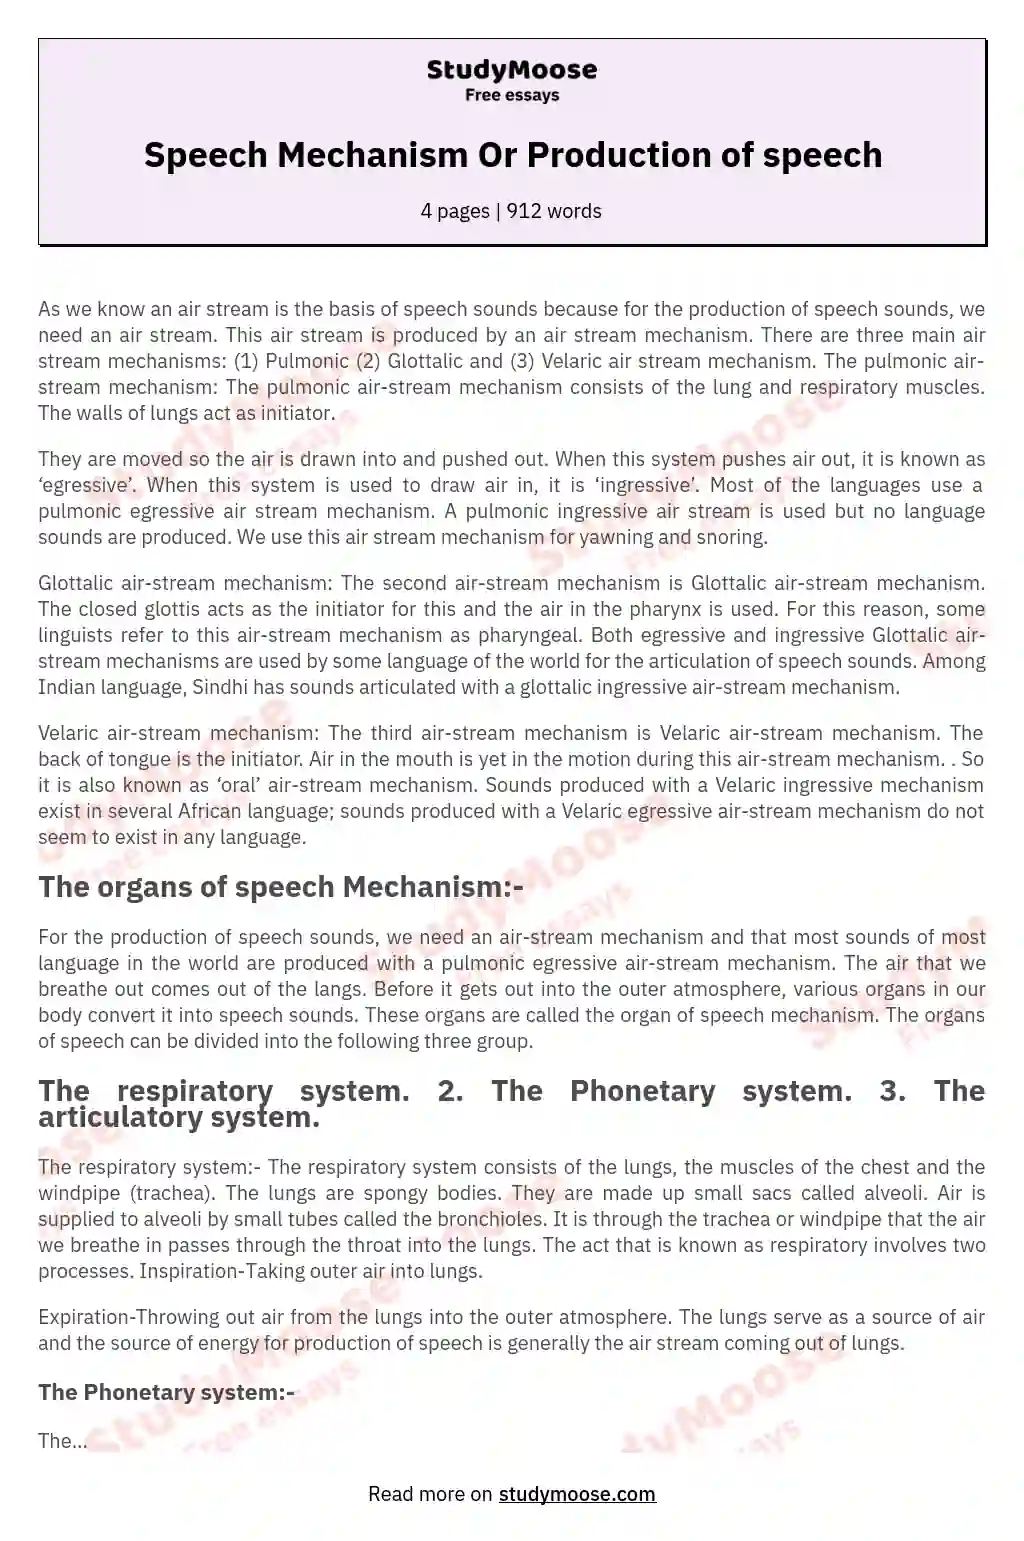 Speech Mechanism Or Production of speech essay